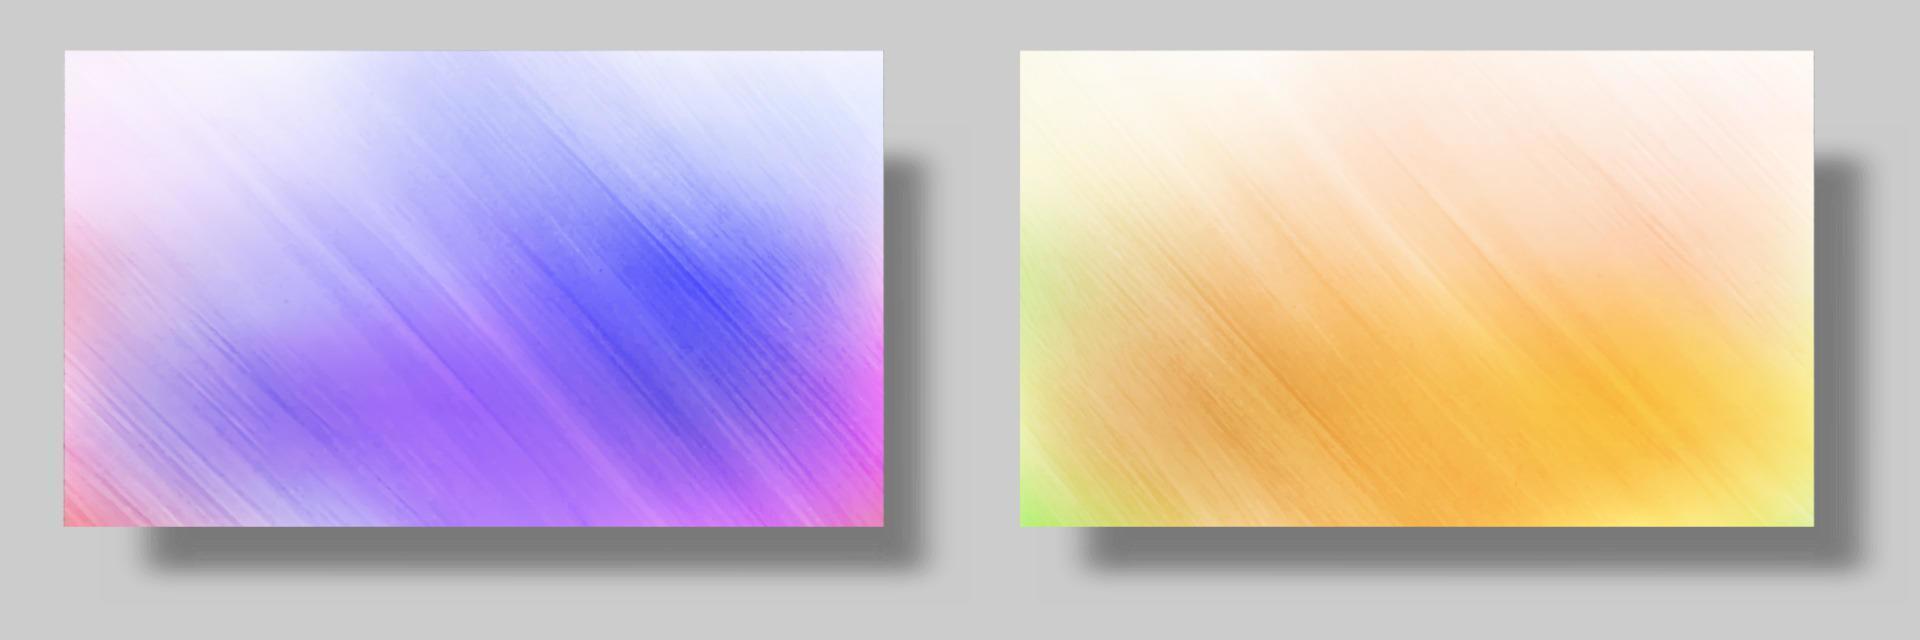 minimalistisk abstrakt bakgrund med skiva effekt på blå och orange färger vektor